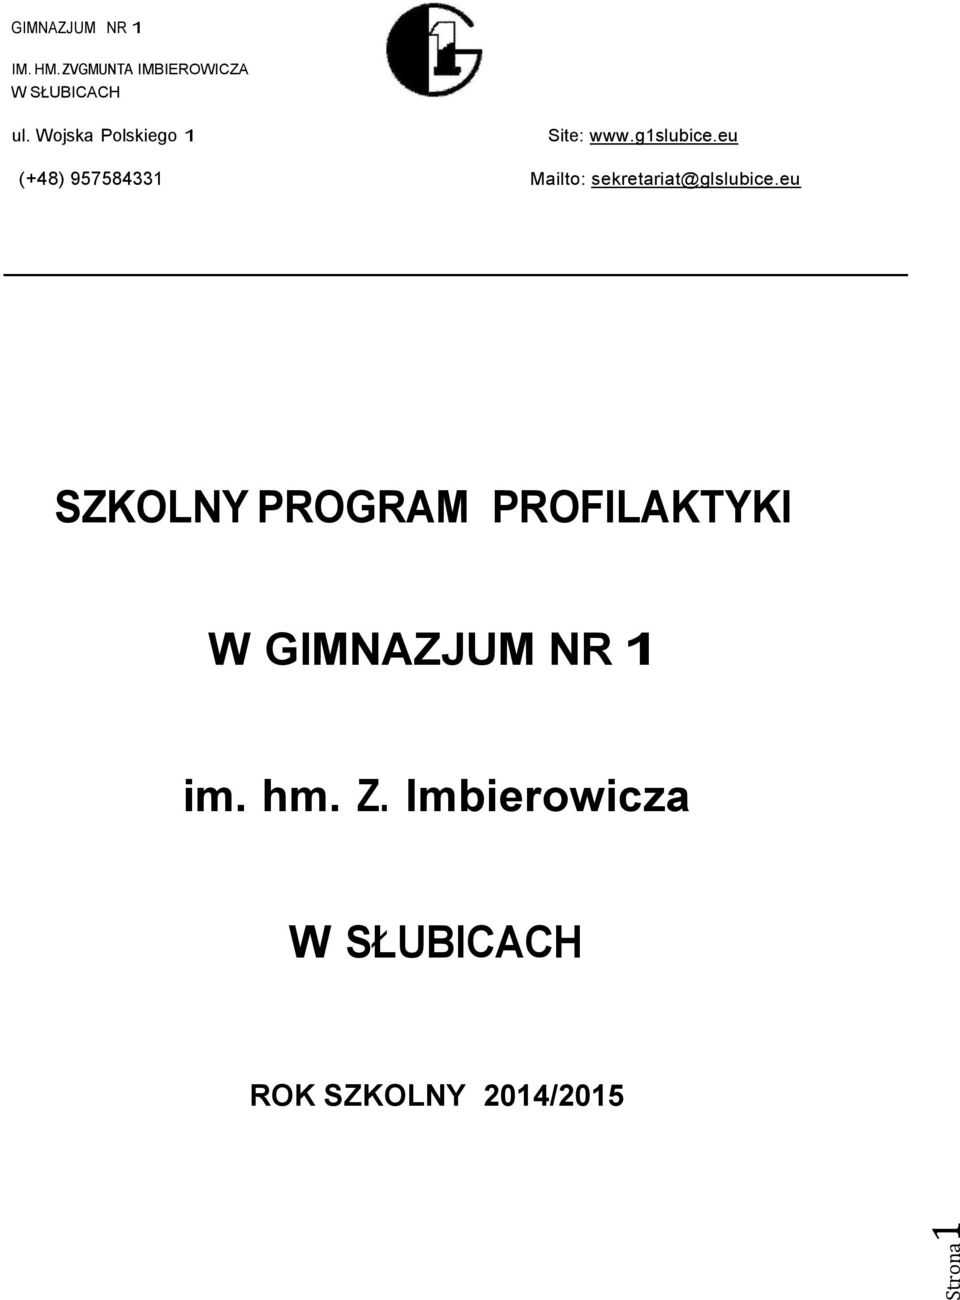 Wojska Polskiego 1 Site: www.g1slubice.